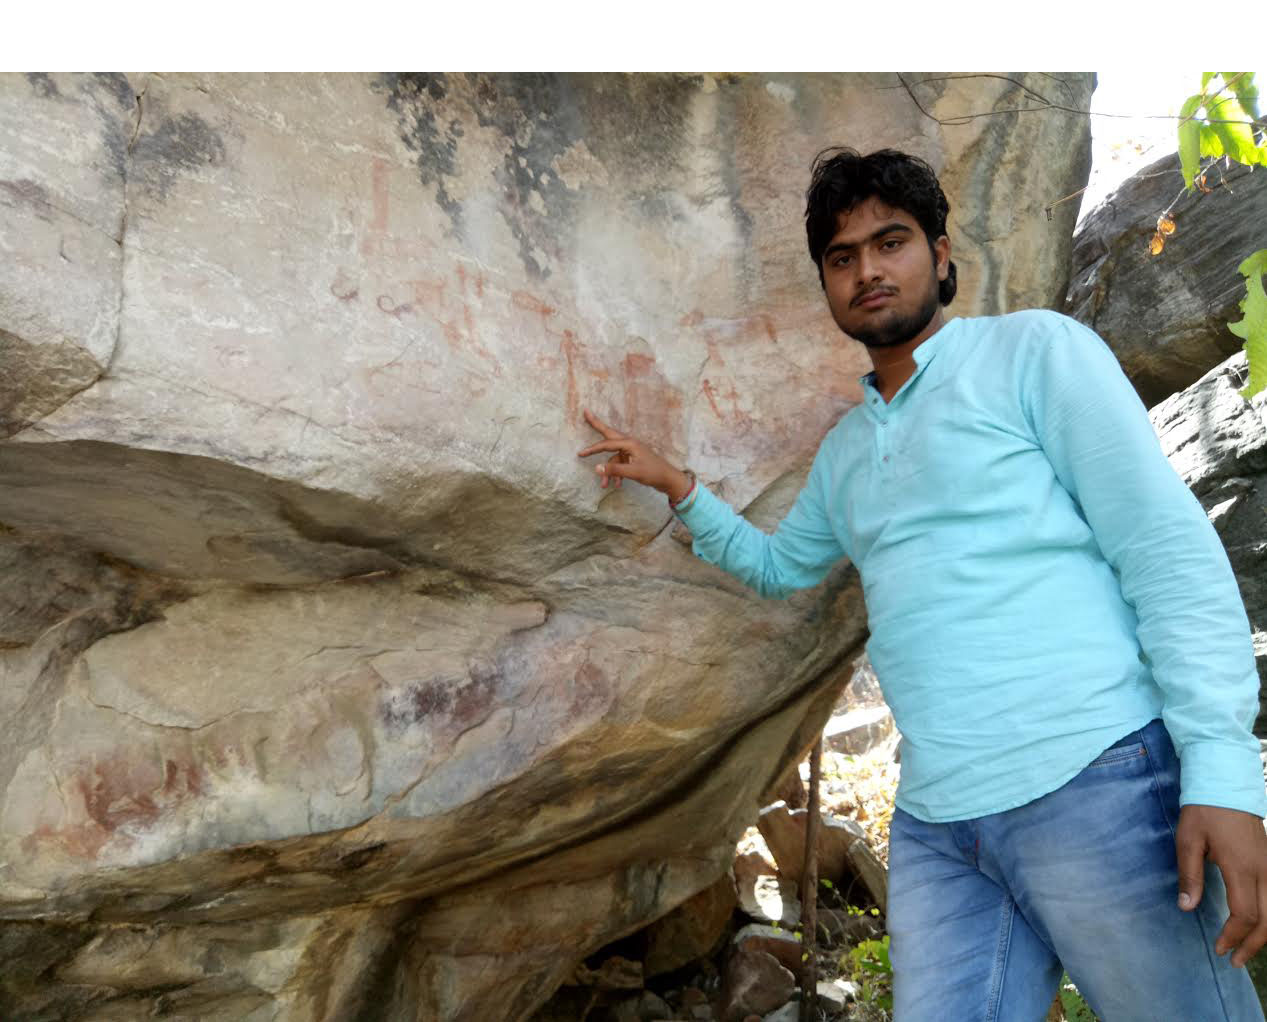 पाठा रिपोर्टिंग के दौरान मारकुंडी के जंगल मे मिले हजारों साल पुराने सभ्यता के निशान